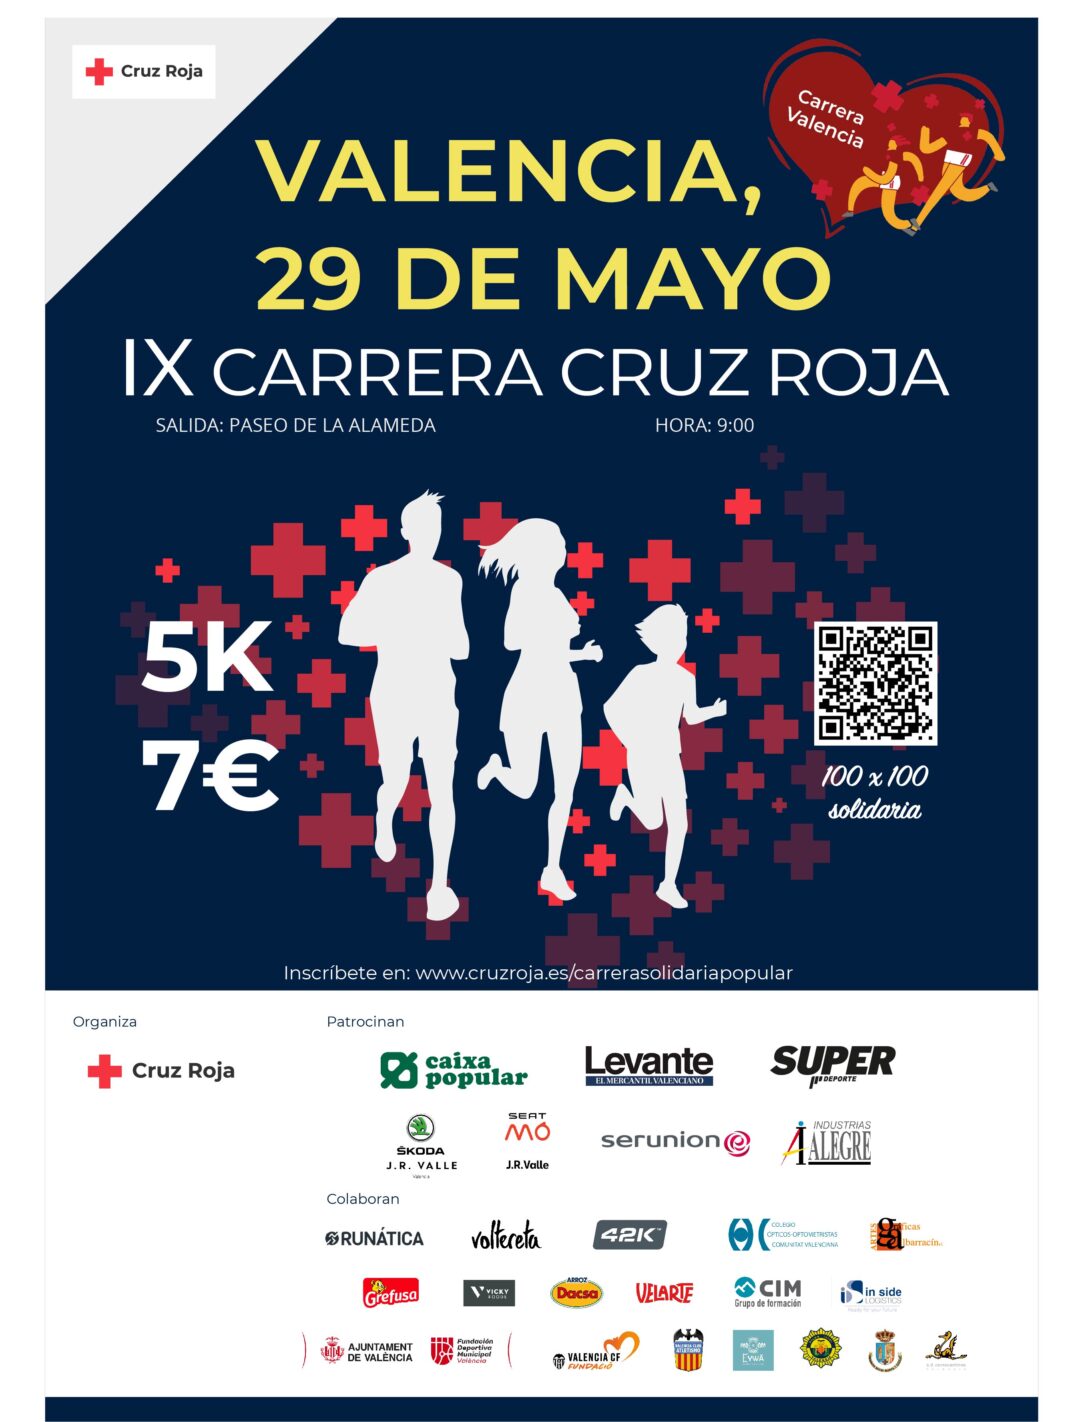 La Carrera de Cruz Roja regresa al Paseo de la Alameda este domingo 29 de mayo